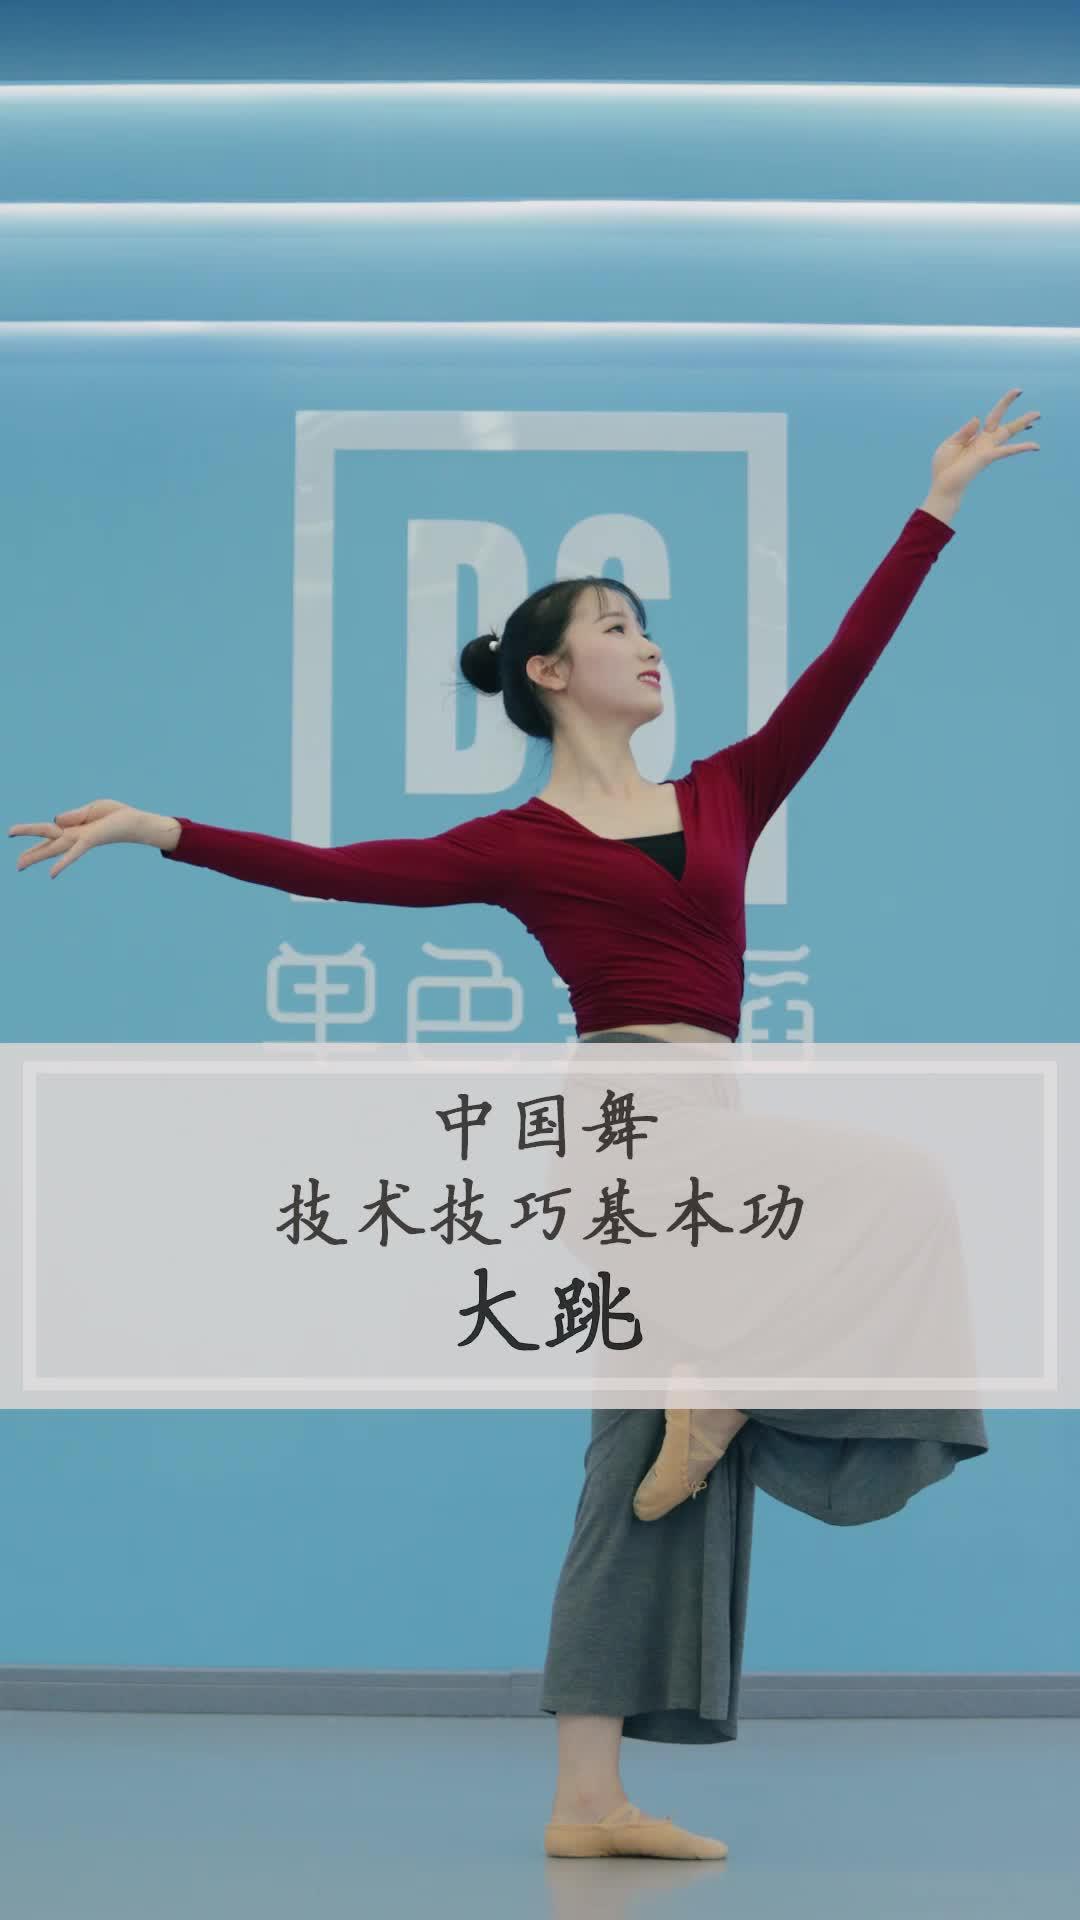 中国舞技术技巧基本功 -《大跳》